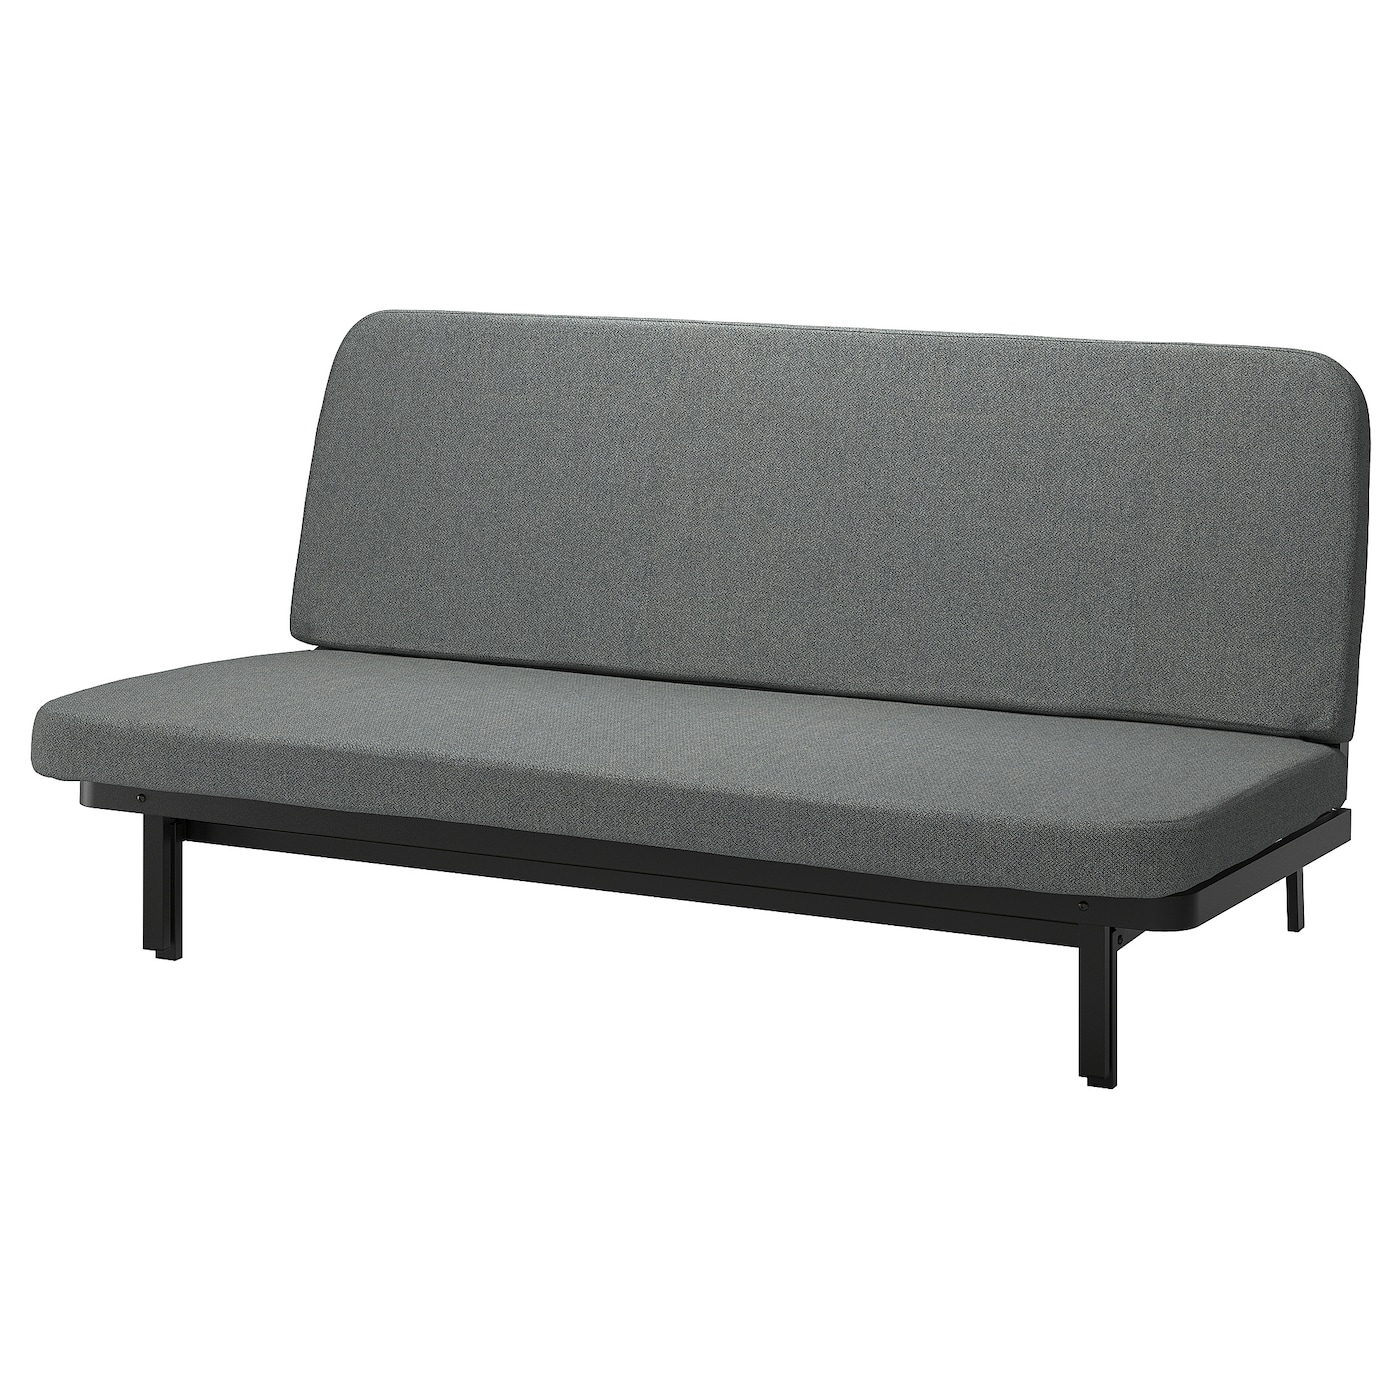 диван кровать шарм дизайн бит 2 серый кровать NYHAMN 3-местный диван-кровать, поролоновый матрас в комплекте/Скартофт черный/светло-серый IKEA